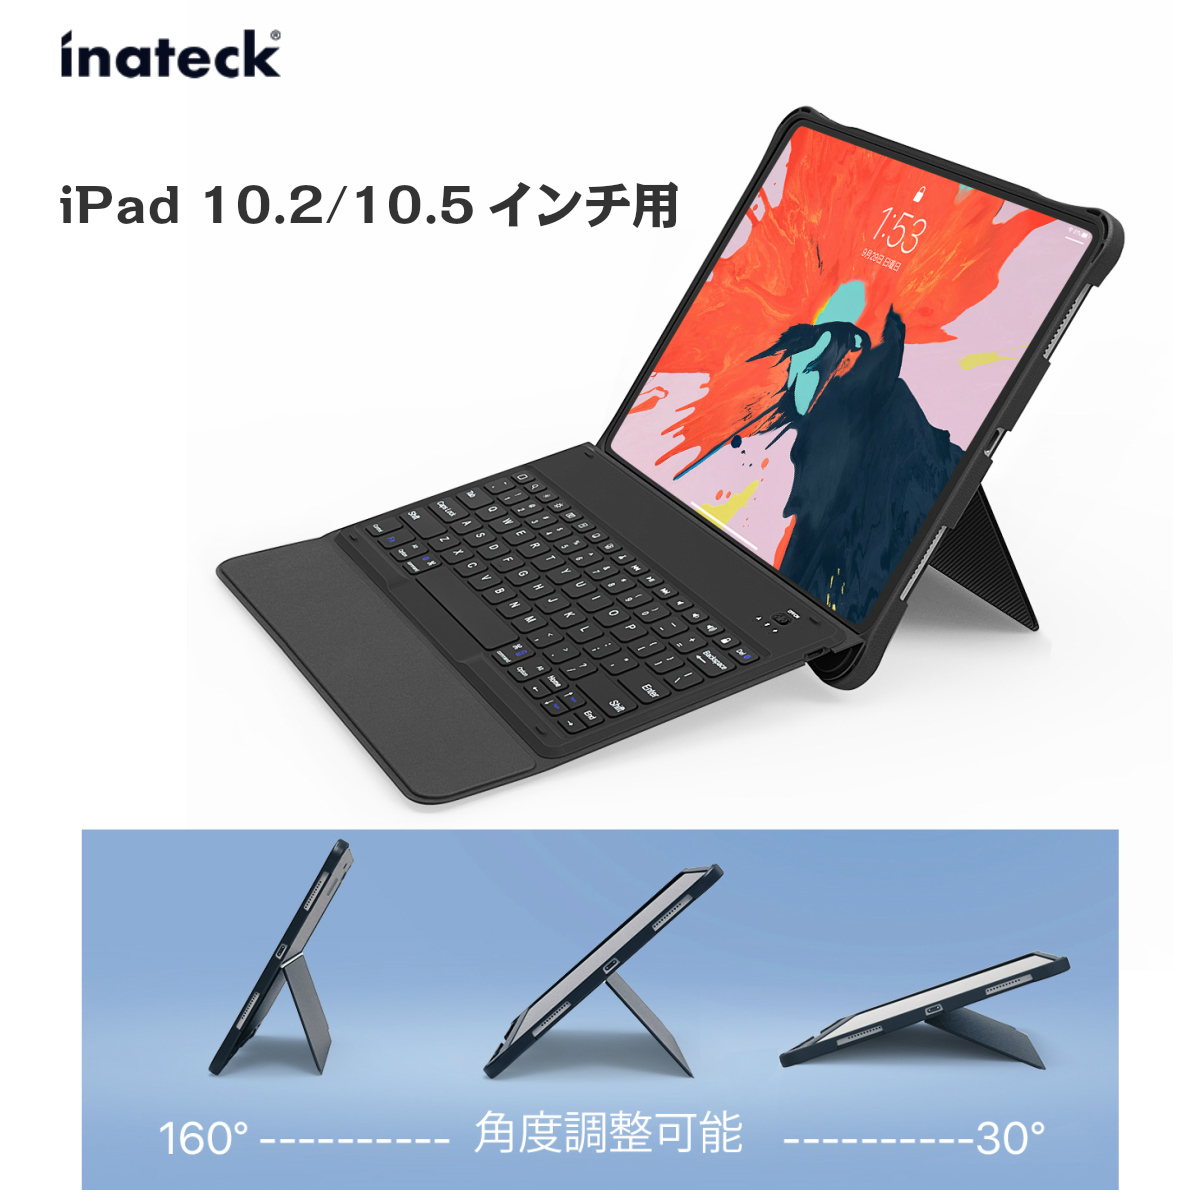 【アウトレット】iPad 10.2インチ 第9世代 2021 iPad Bluetoothキーボード ケース 10.2 10.5 第7世代 第8世代  2020 2019 第3世代 iPad Pro iPad Air カバー 取り外し可能 脱着式 無段階調整可能 ワイヤレス ペンシルスロット付 